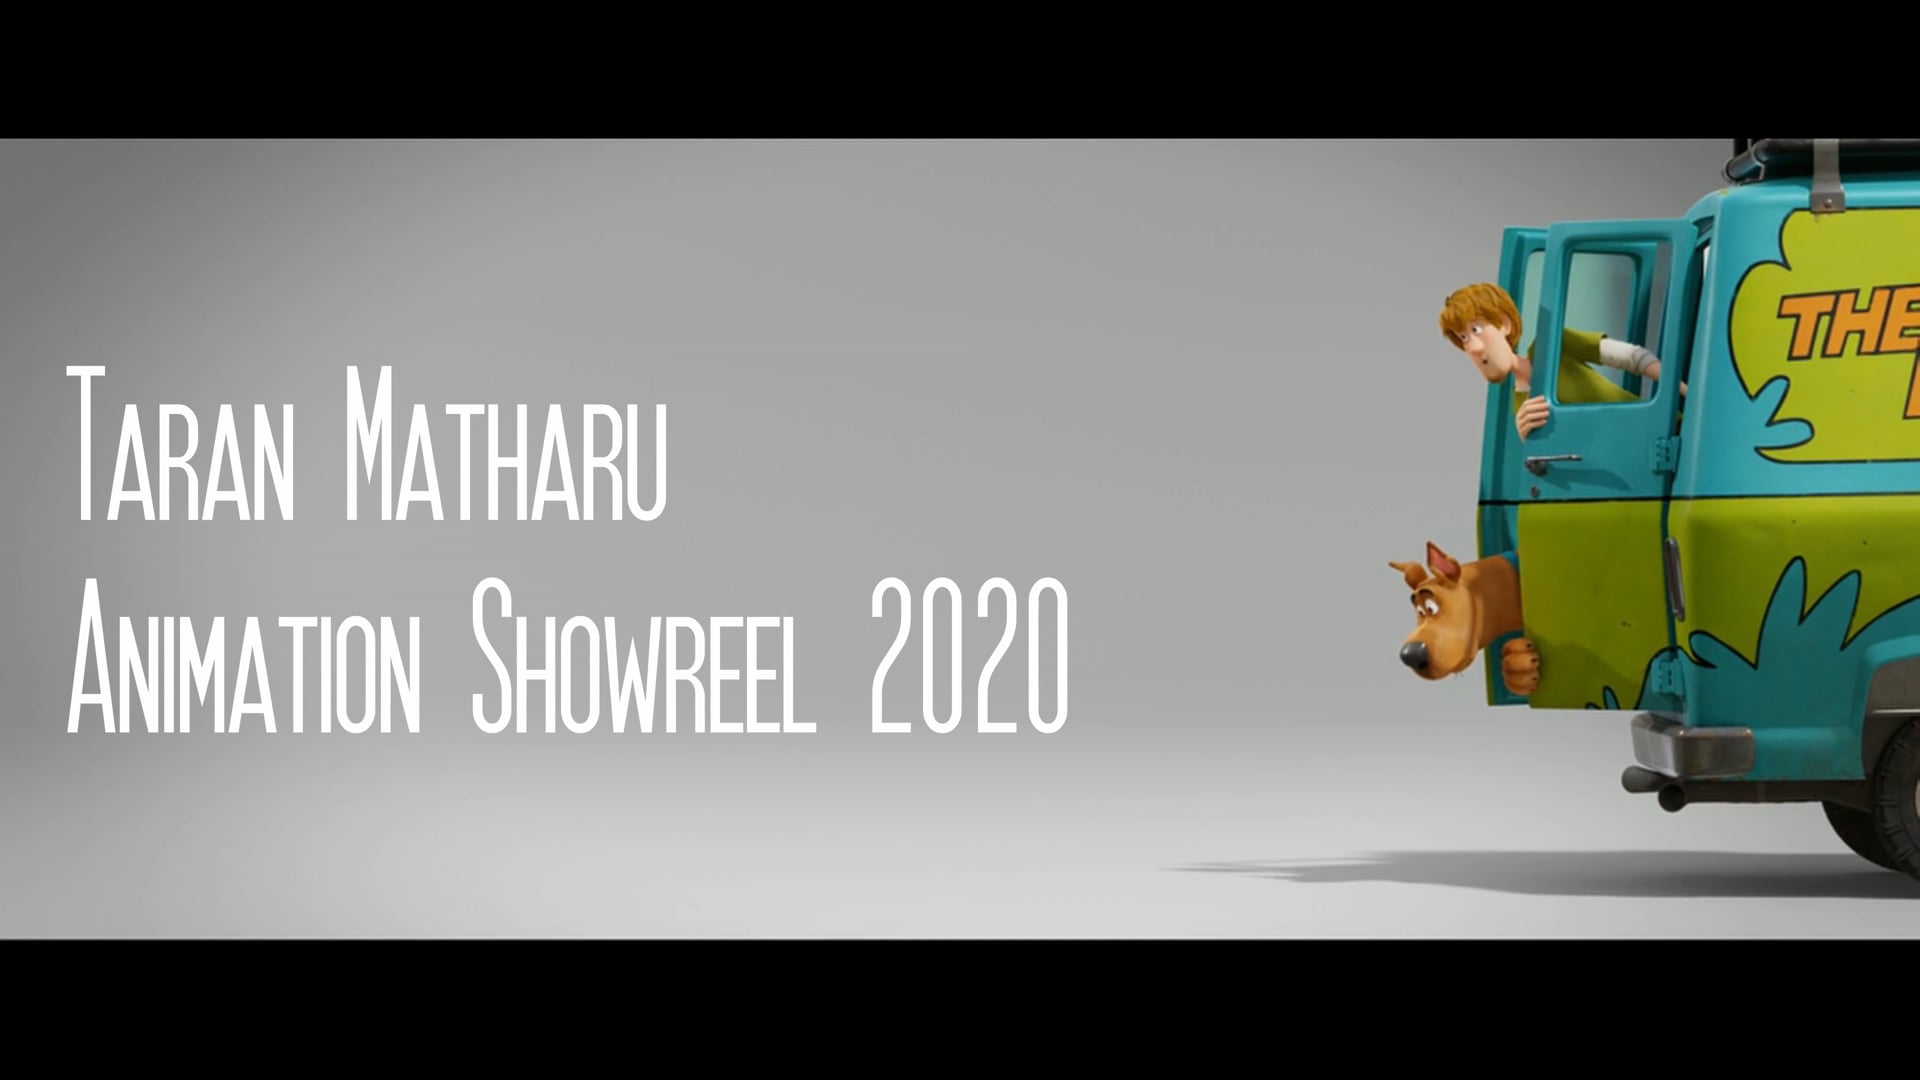 Animation Showreel 2020